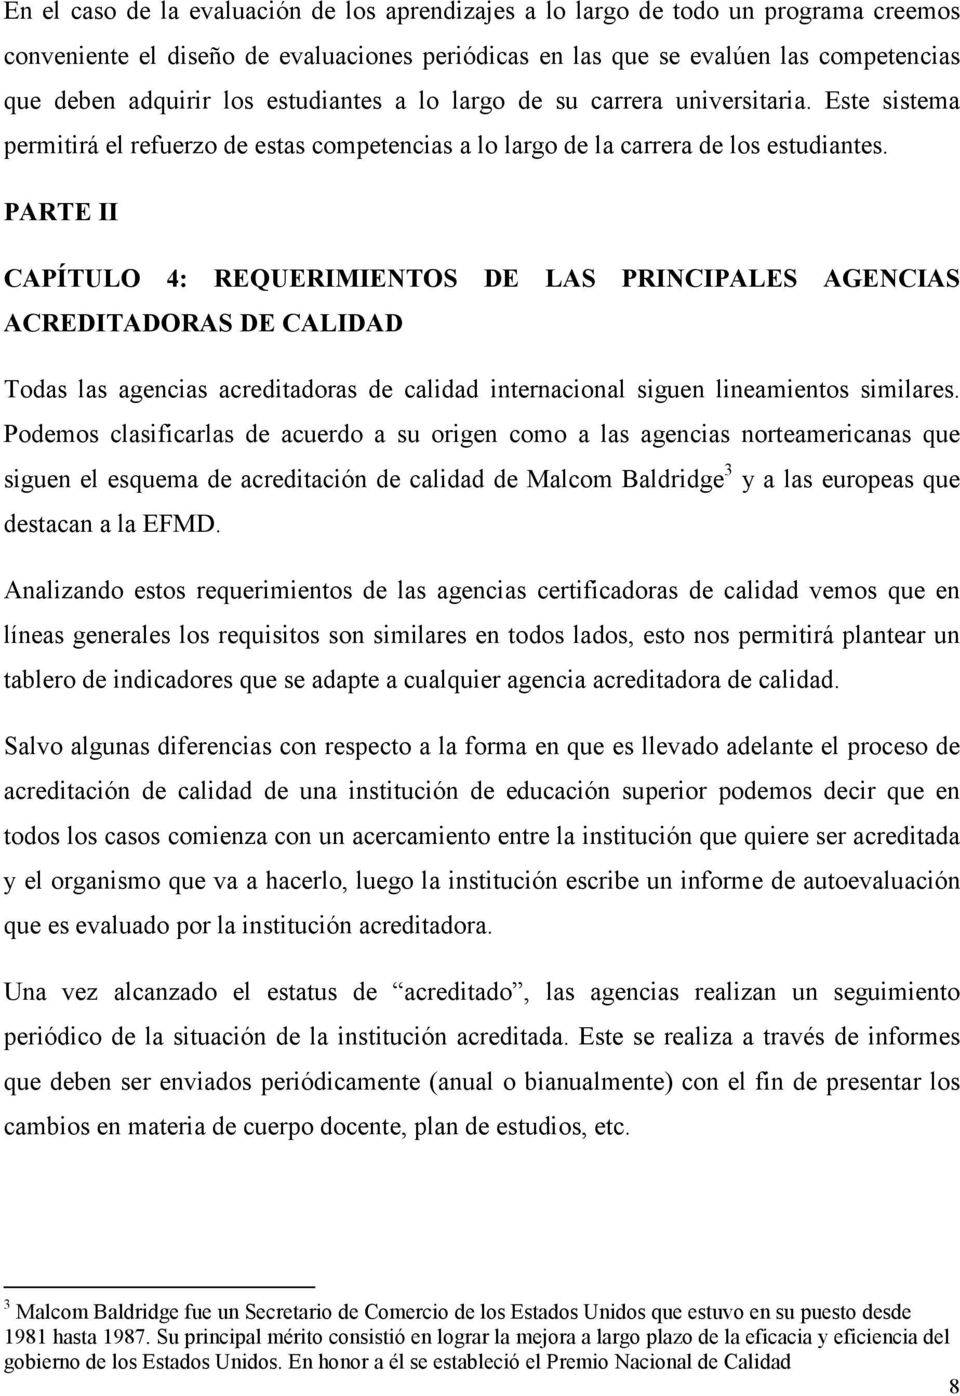 PARTE II CAPÍTULO 4: REQUERIMIENTOS DE LAS PRINCIPALES AGENCIAS ACREDITADORAS DE CALIDAD Todas las agencias acreditadoras de calidad internacional siguen lineamientos similares.